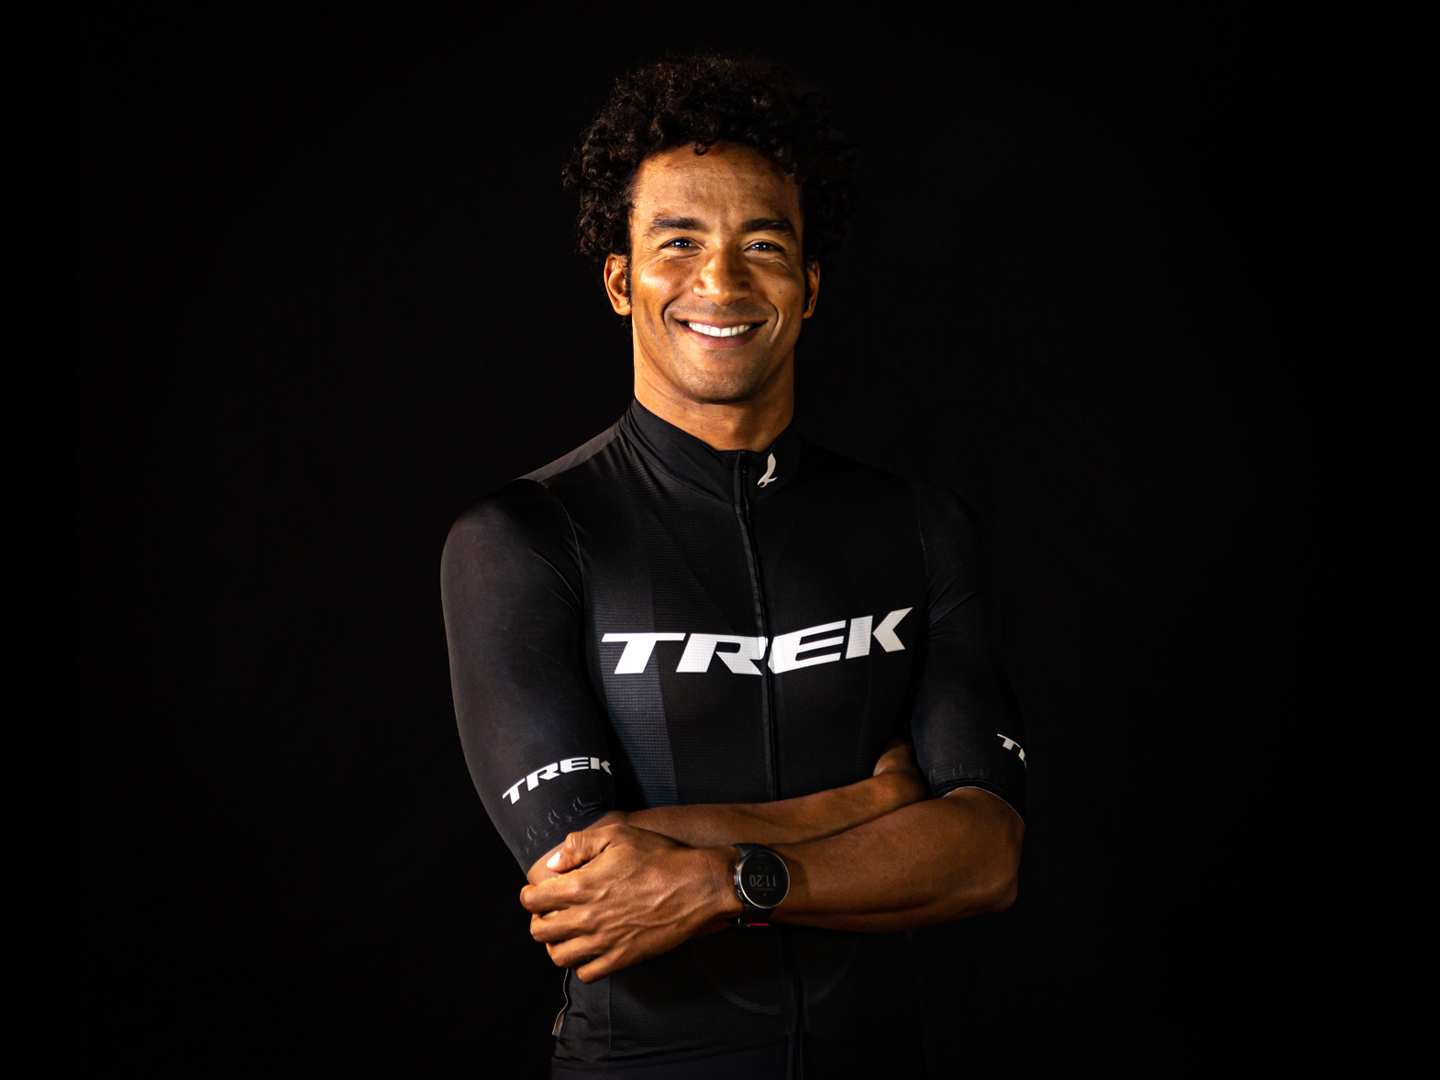 Retrato do triatleta brasileiro Thiago Vinhal com a camiseta de ciclismo da Trek